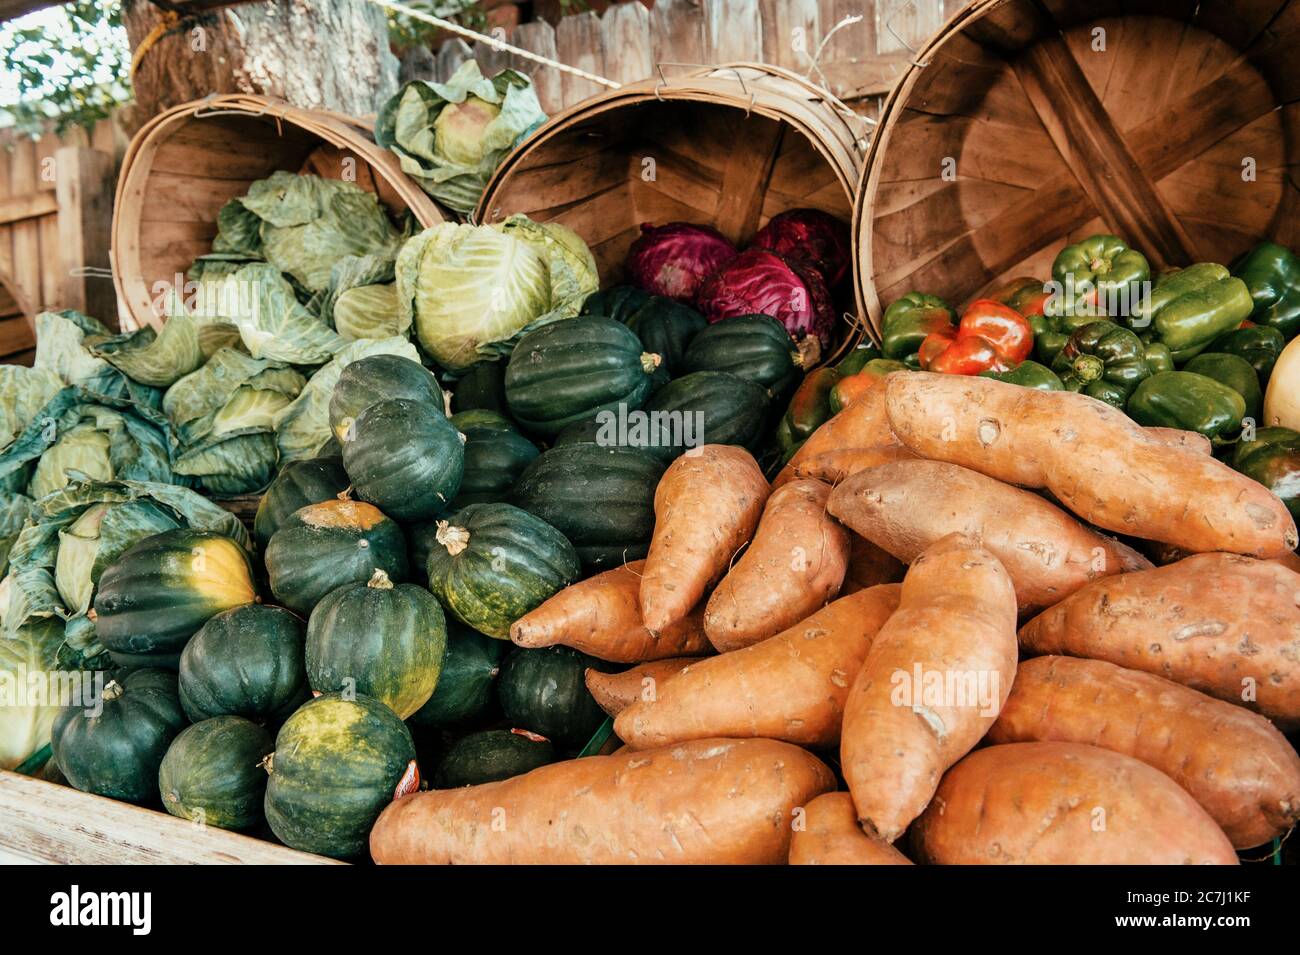 Puesto de frutas y verduras frescas o mercado de productos en carretera. Foto de stock